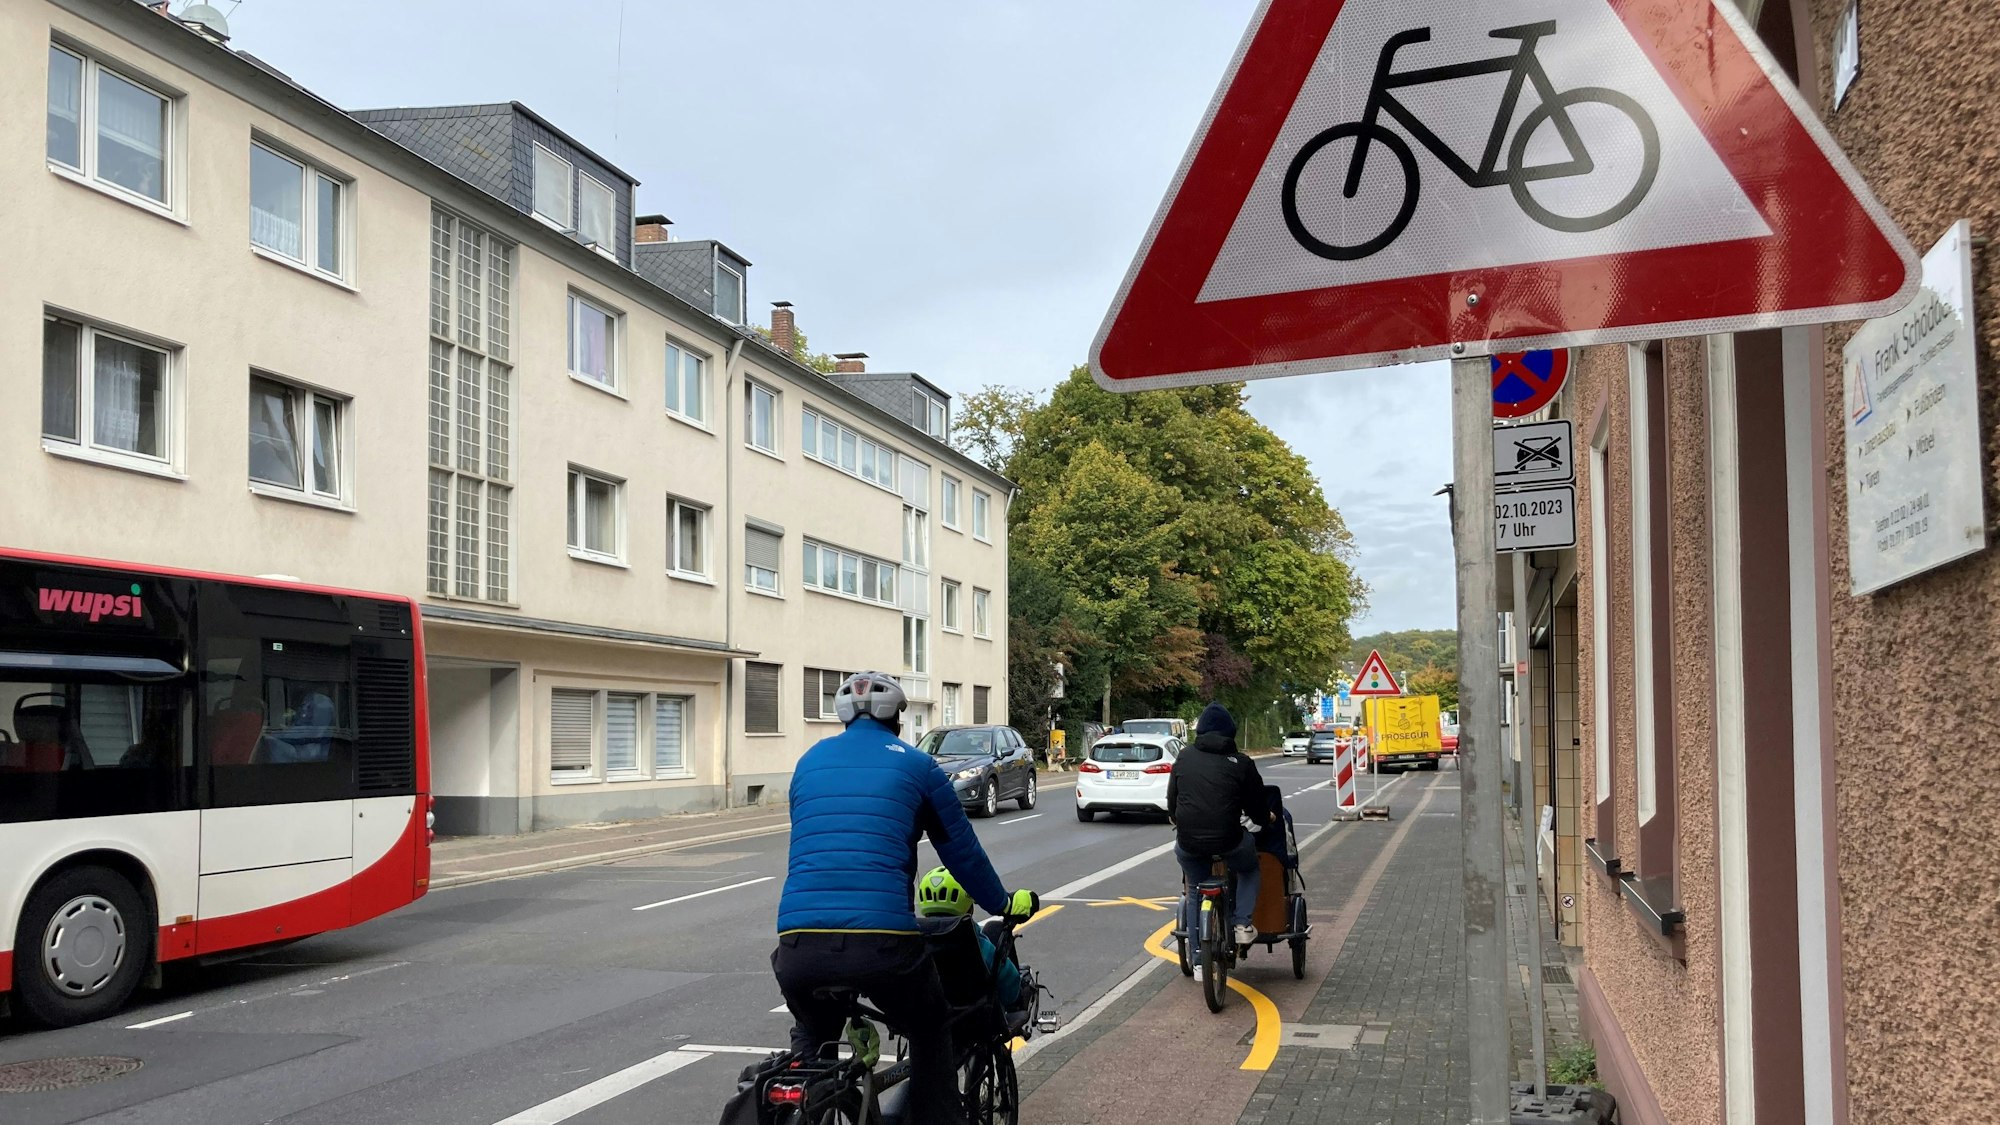 Zu sehen sind zwei hintereinander fahrende Radfahrer, die die gelben für sie ausgewiesenen Markierungen überfahren, um auf dem Radwegbleiben zu können.